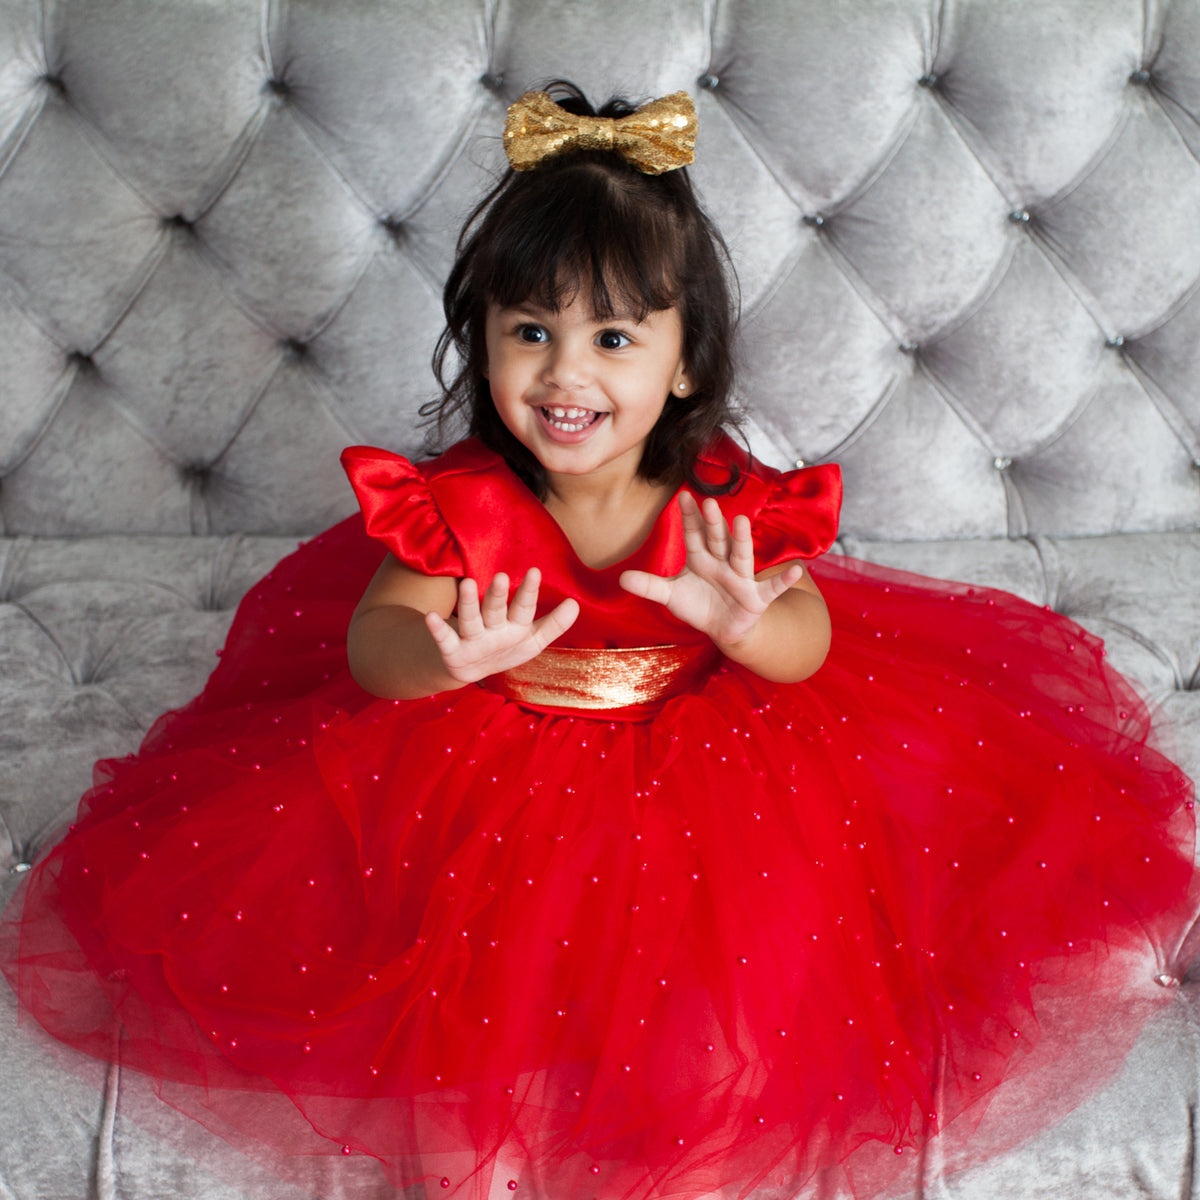 NWT LuLaRoe Kids' Size 4 SCARLETT Play Dress RED & PURPLE Rose